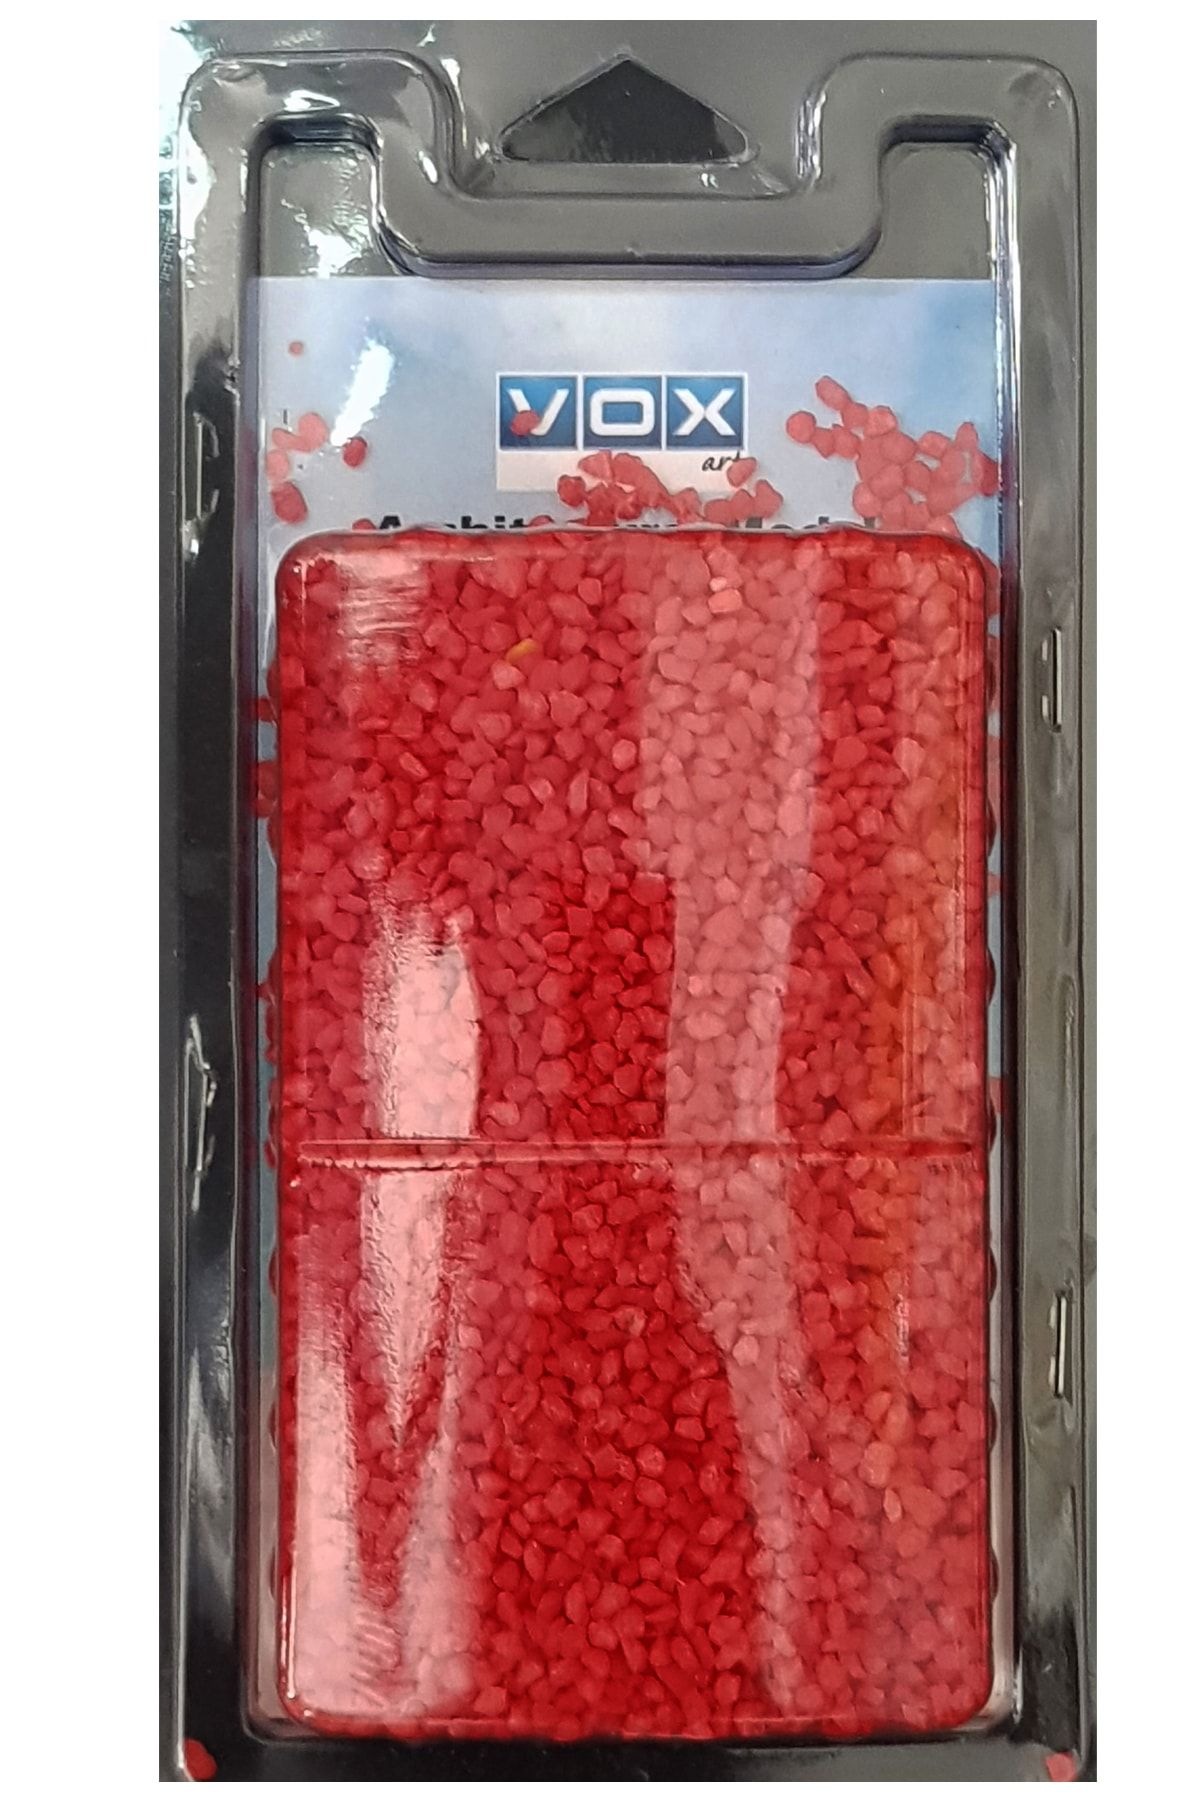 Vox Art Ince Çakıl Taşı - 230 Gr - Kırmızı